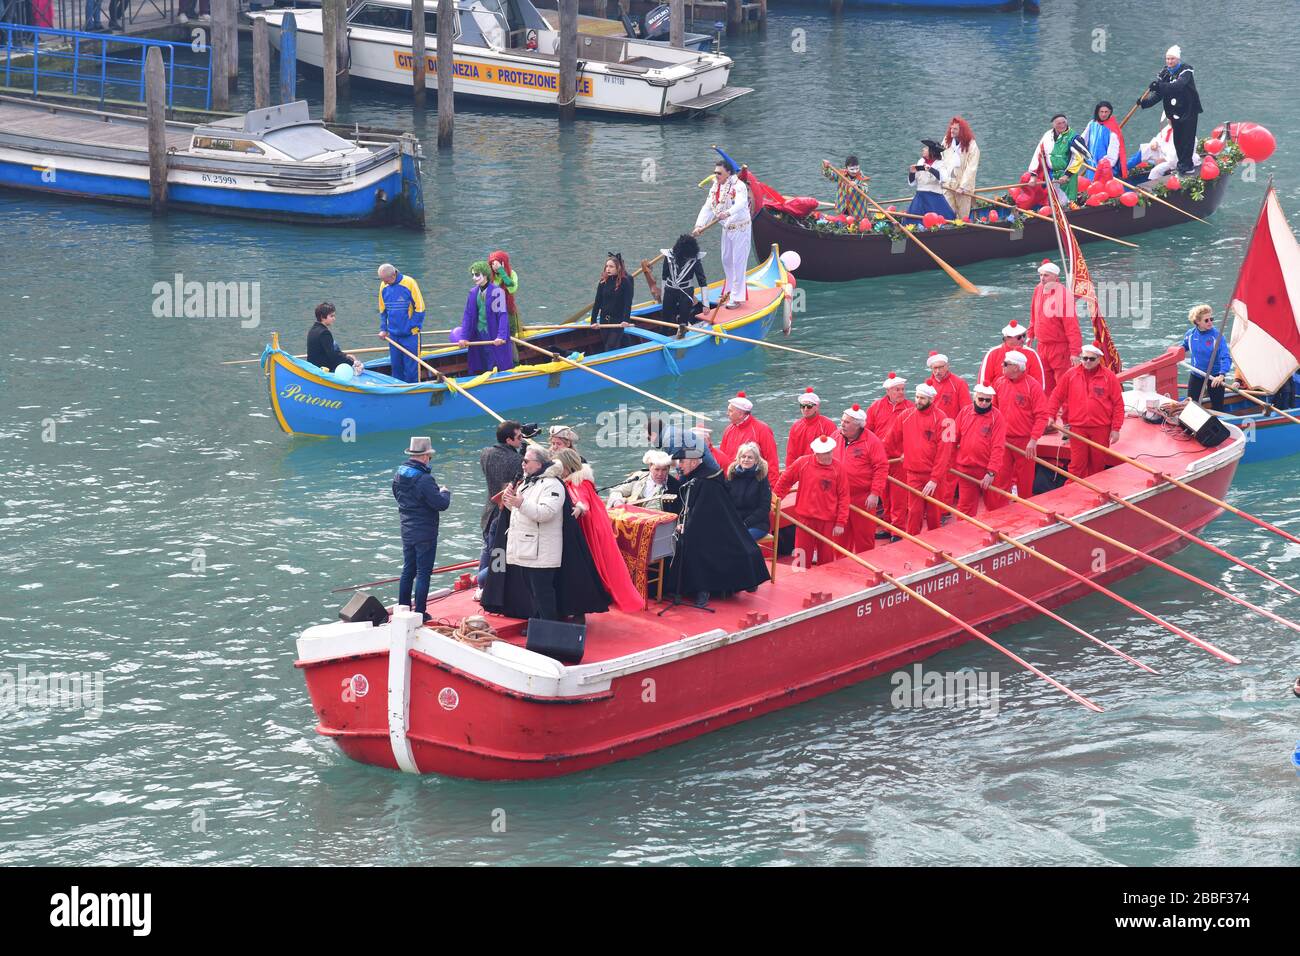 Venedig, Italy-Februar 2020; hochwinkeliger Blick auf die Festa Veneziane auf dem Wasser mit schwebenden Strukturen und Menschen in Booten in Kostümen bei einem Teil von t Stockfoto